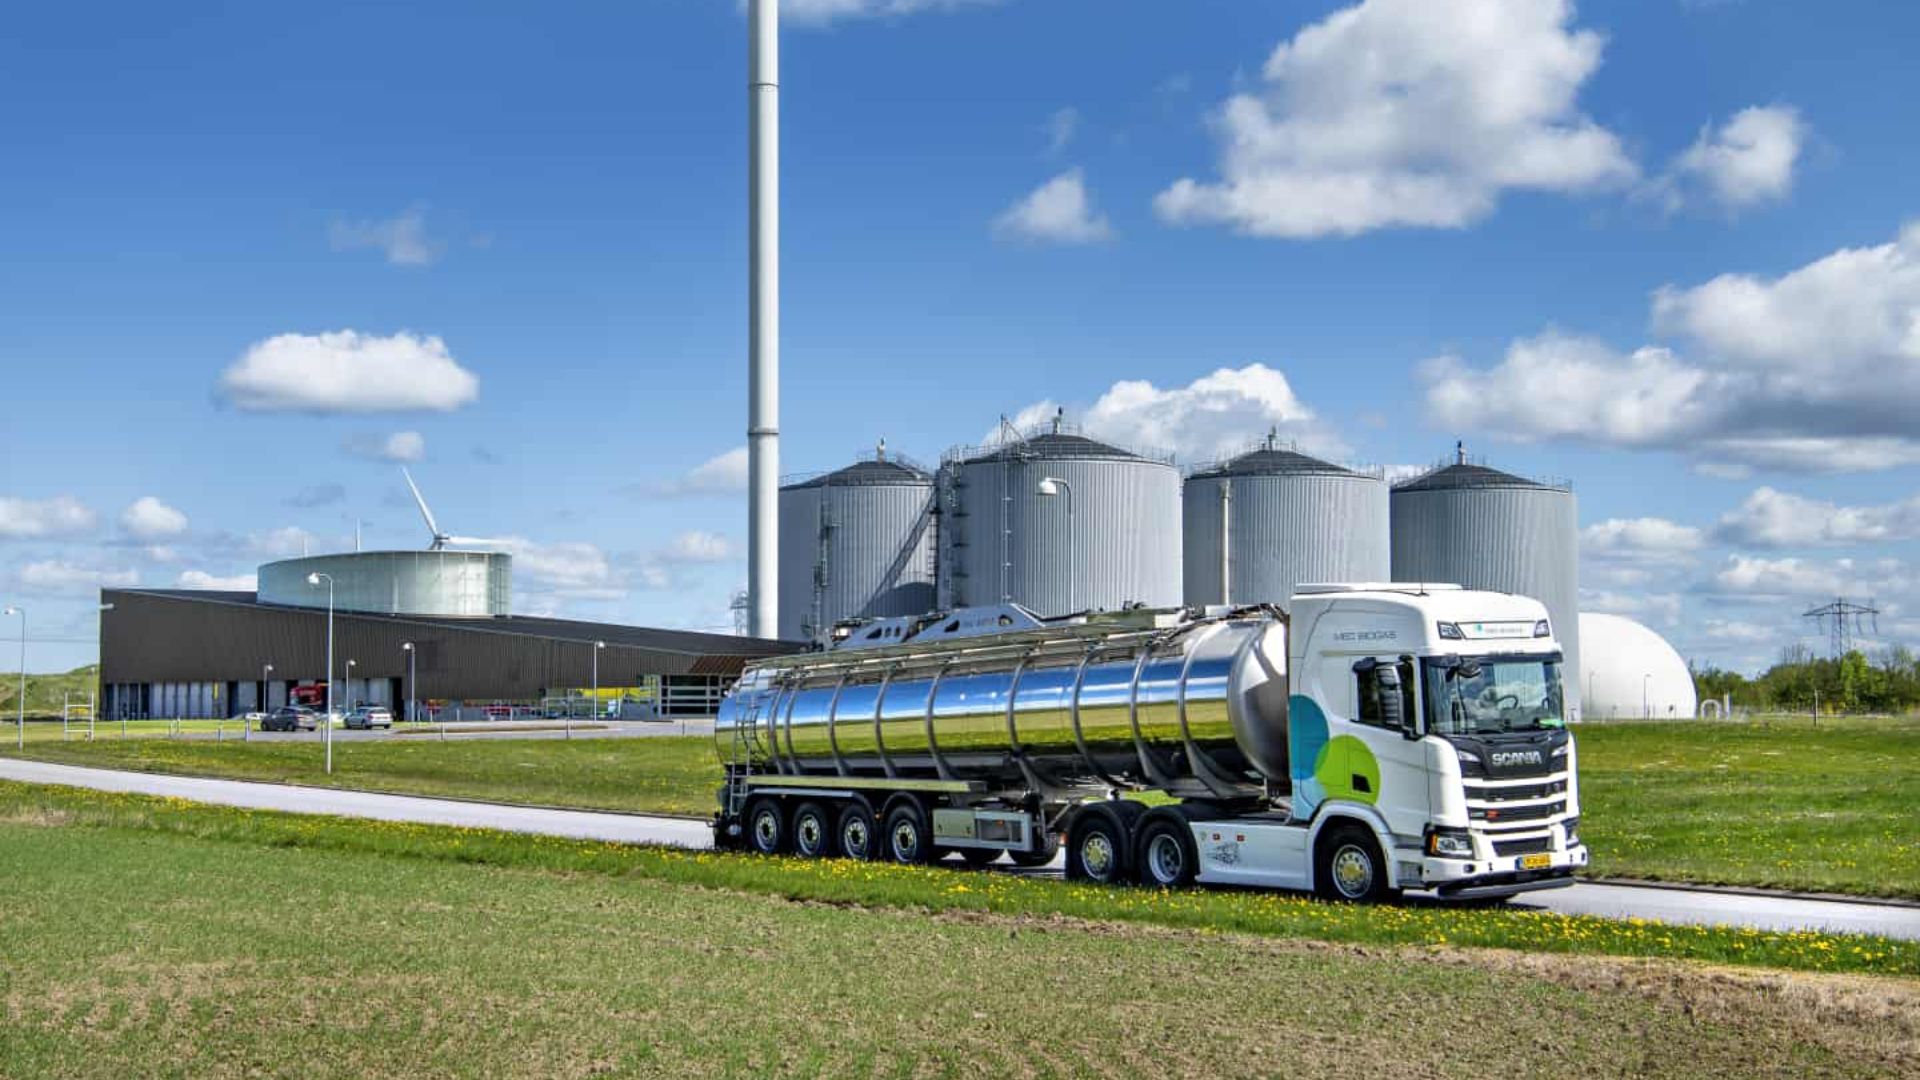 MEC-Biogas has been acquired by Copenhagen Infrastructure Partners